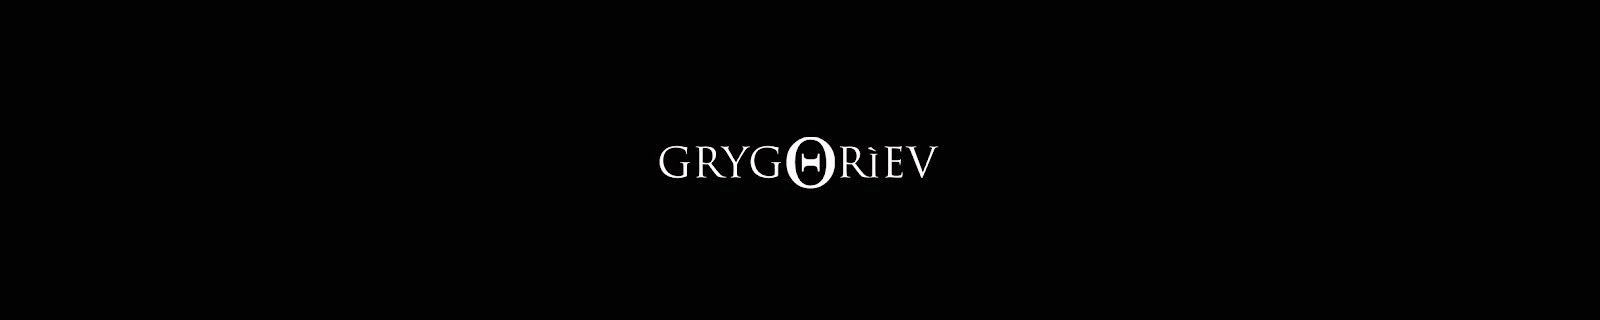 GRYGORIEV